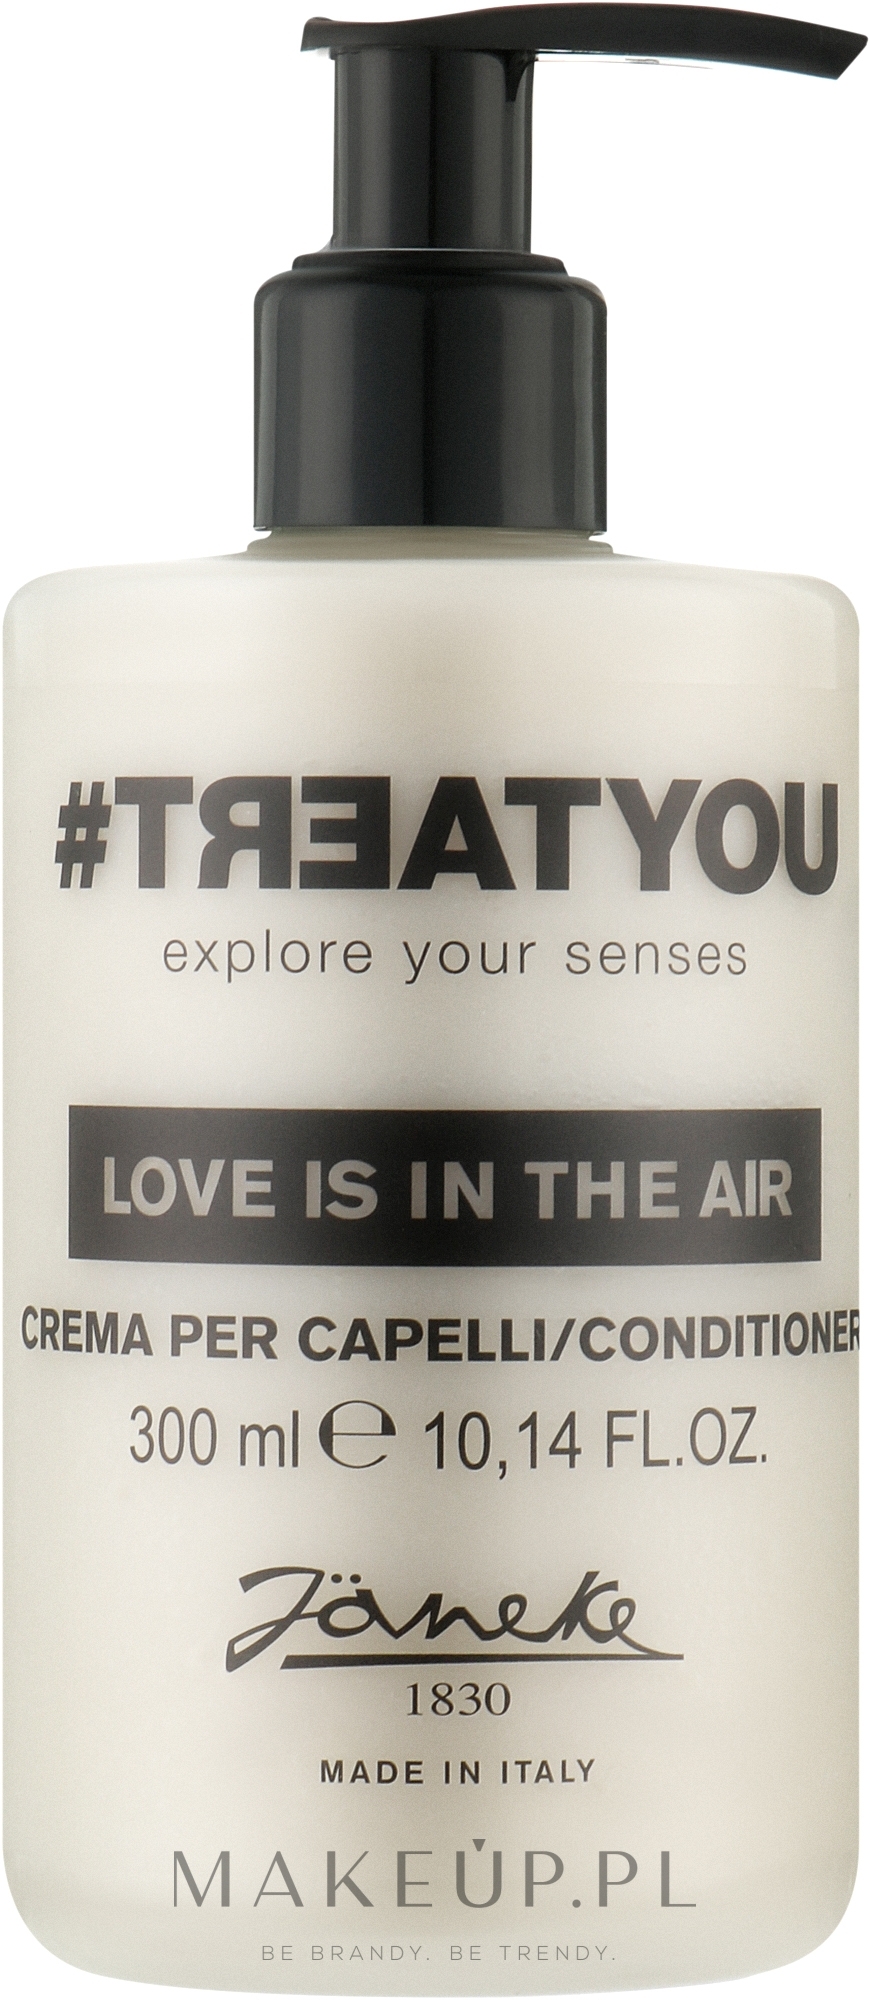 Odżywka do włosów - Janeke #Treatyou Love Is In The Air Conditioner — Zdjęcie 300 ml